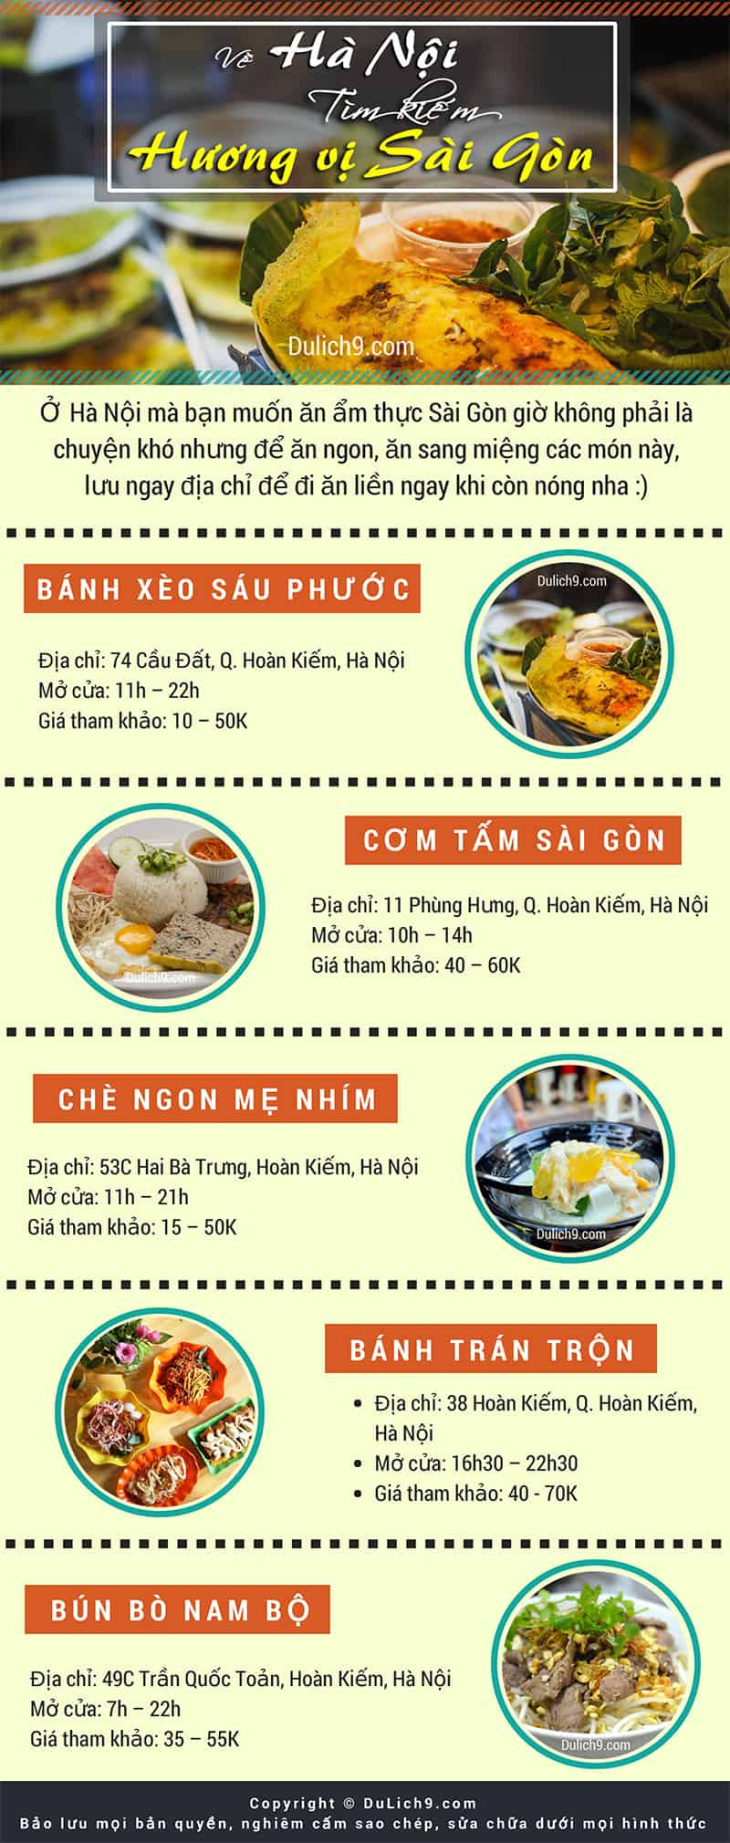 Infographic: Các đặc sản, món ăn nổi tiếng Sài Gòn ở Hà Nội